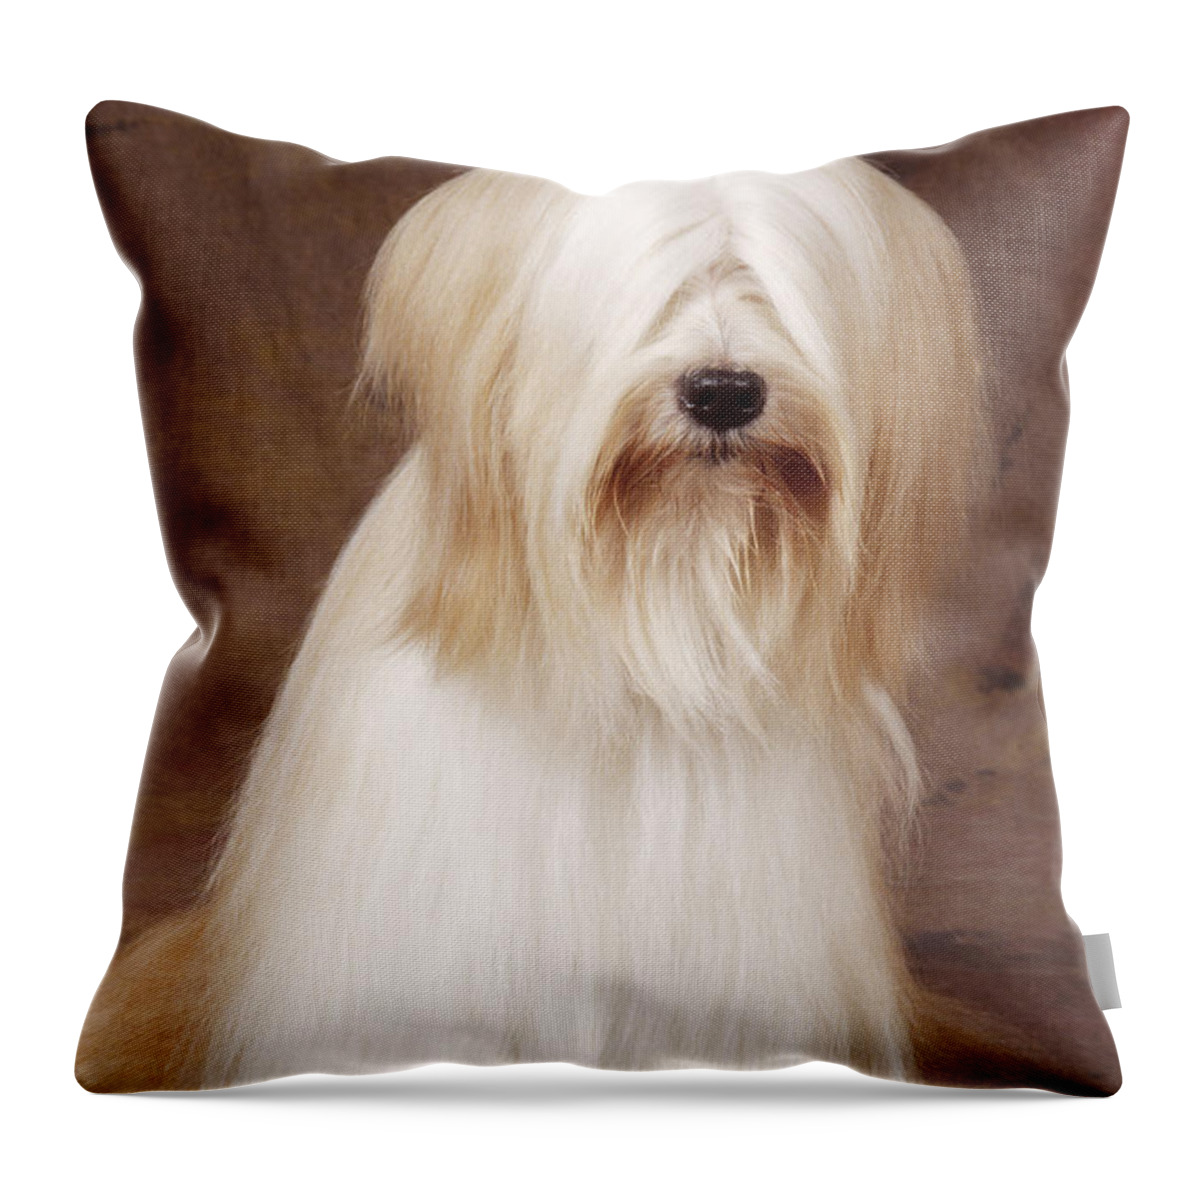 Tibetan Terrier Throw Pillow featuring the photograph Tibetan Terrier Dog by John Daniels